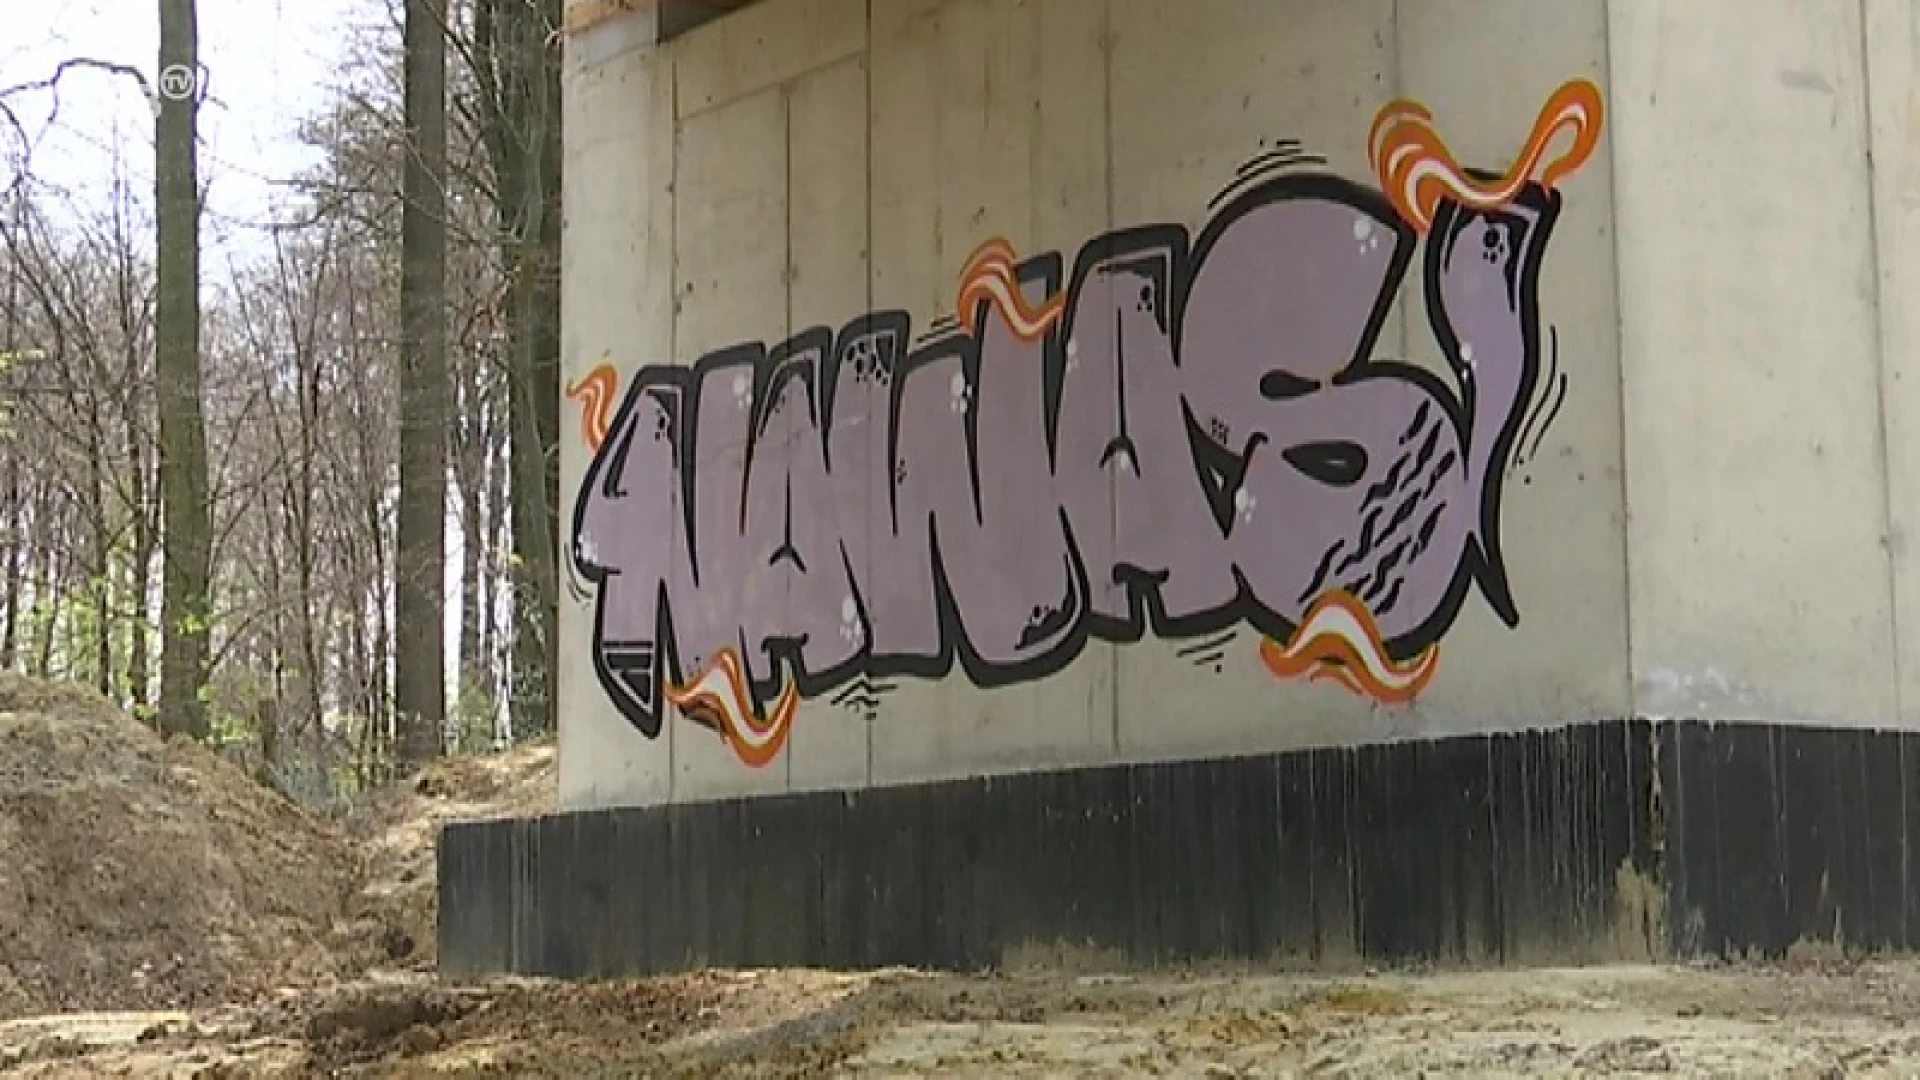 Nieuwe houten fietsers- en voetgangersbrug in Oud-Heverlee al na 3 weken beklad met graffiti